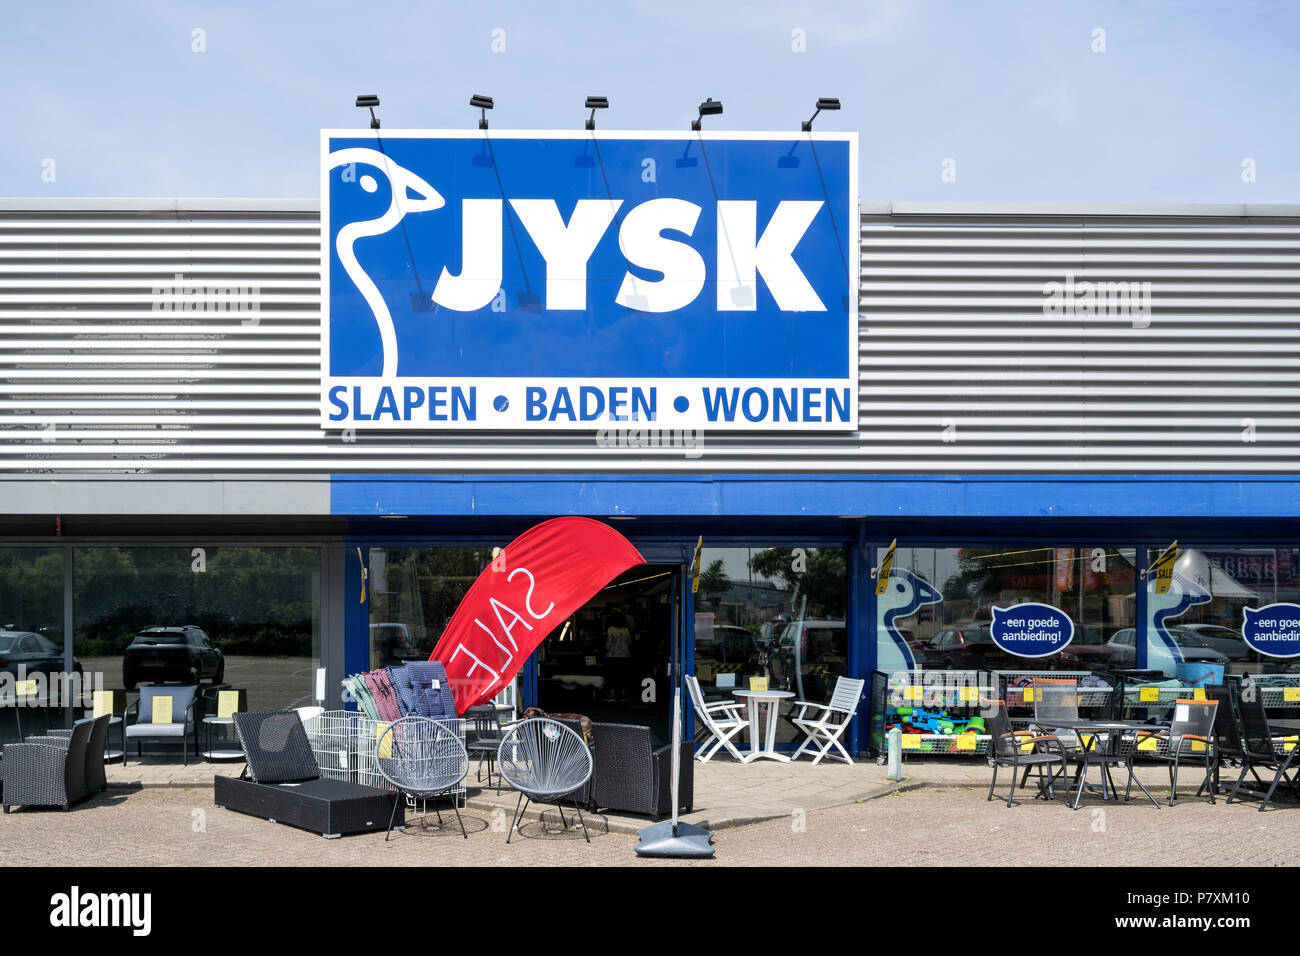 Tienda danesa jysk fotografías e imágenes de alta resolución - Alamy